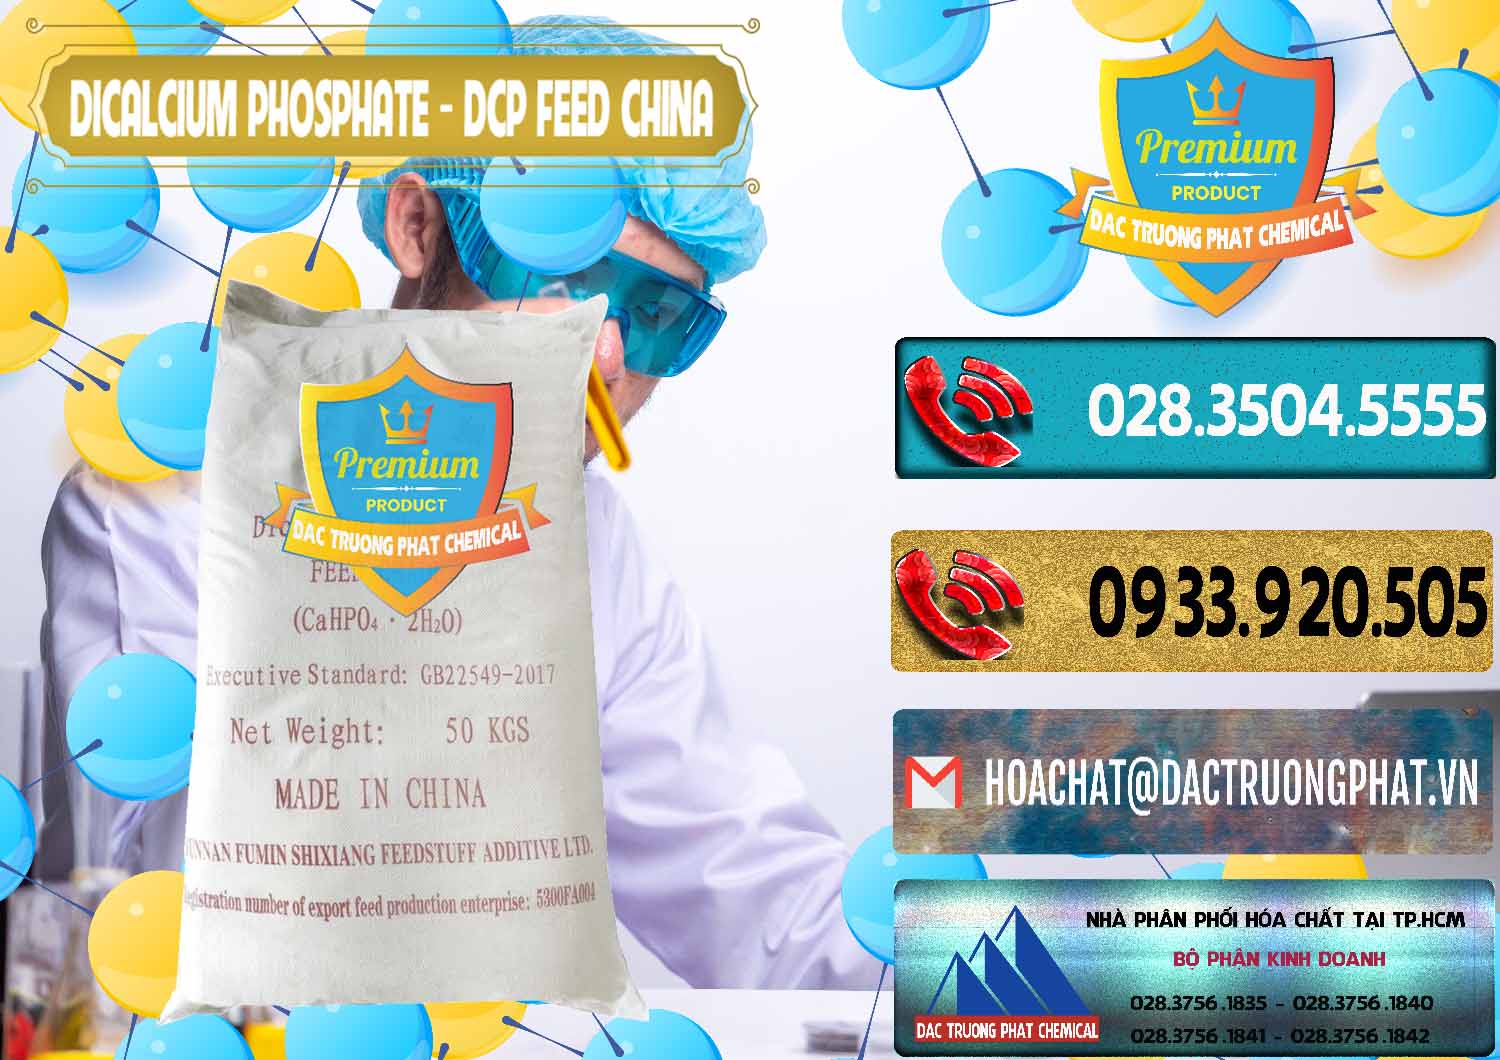 Cung cấp - bán Dicalcium Phosphate - DCP Feed Grade Trung Quốc China - 0296 - Cty chuyên cung cấp & kinh doanh hóa chất tại TP.HCM - hoachatdetnhuom.com